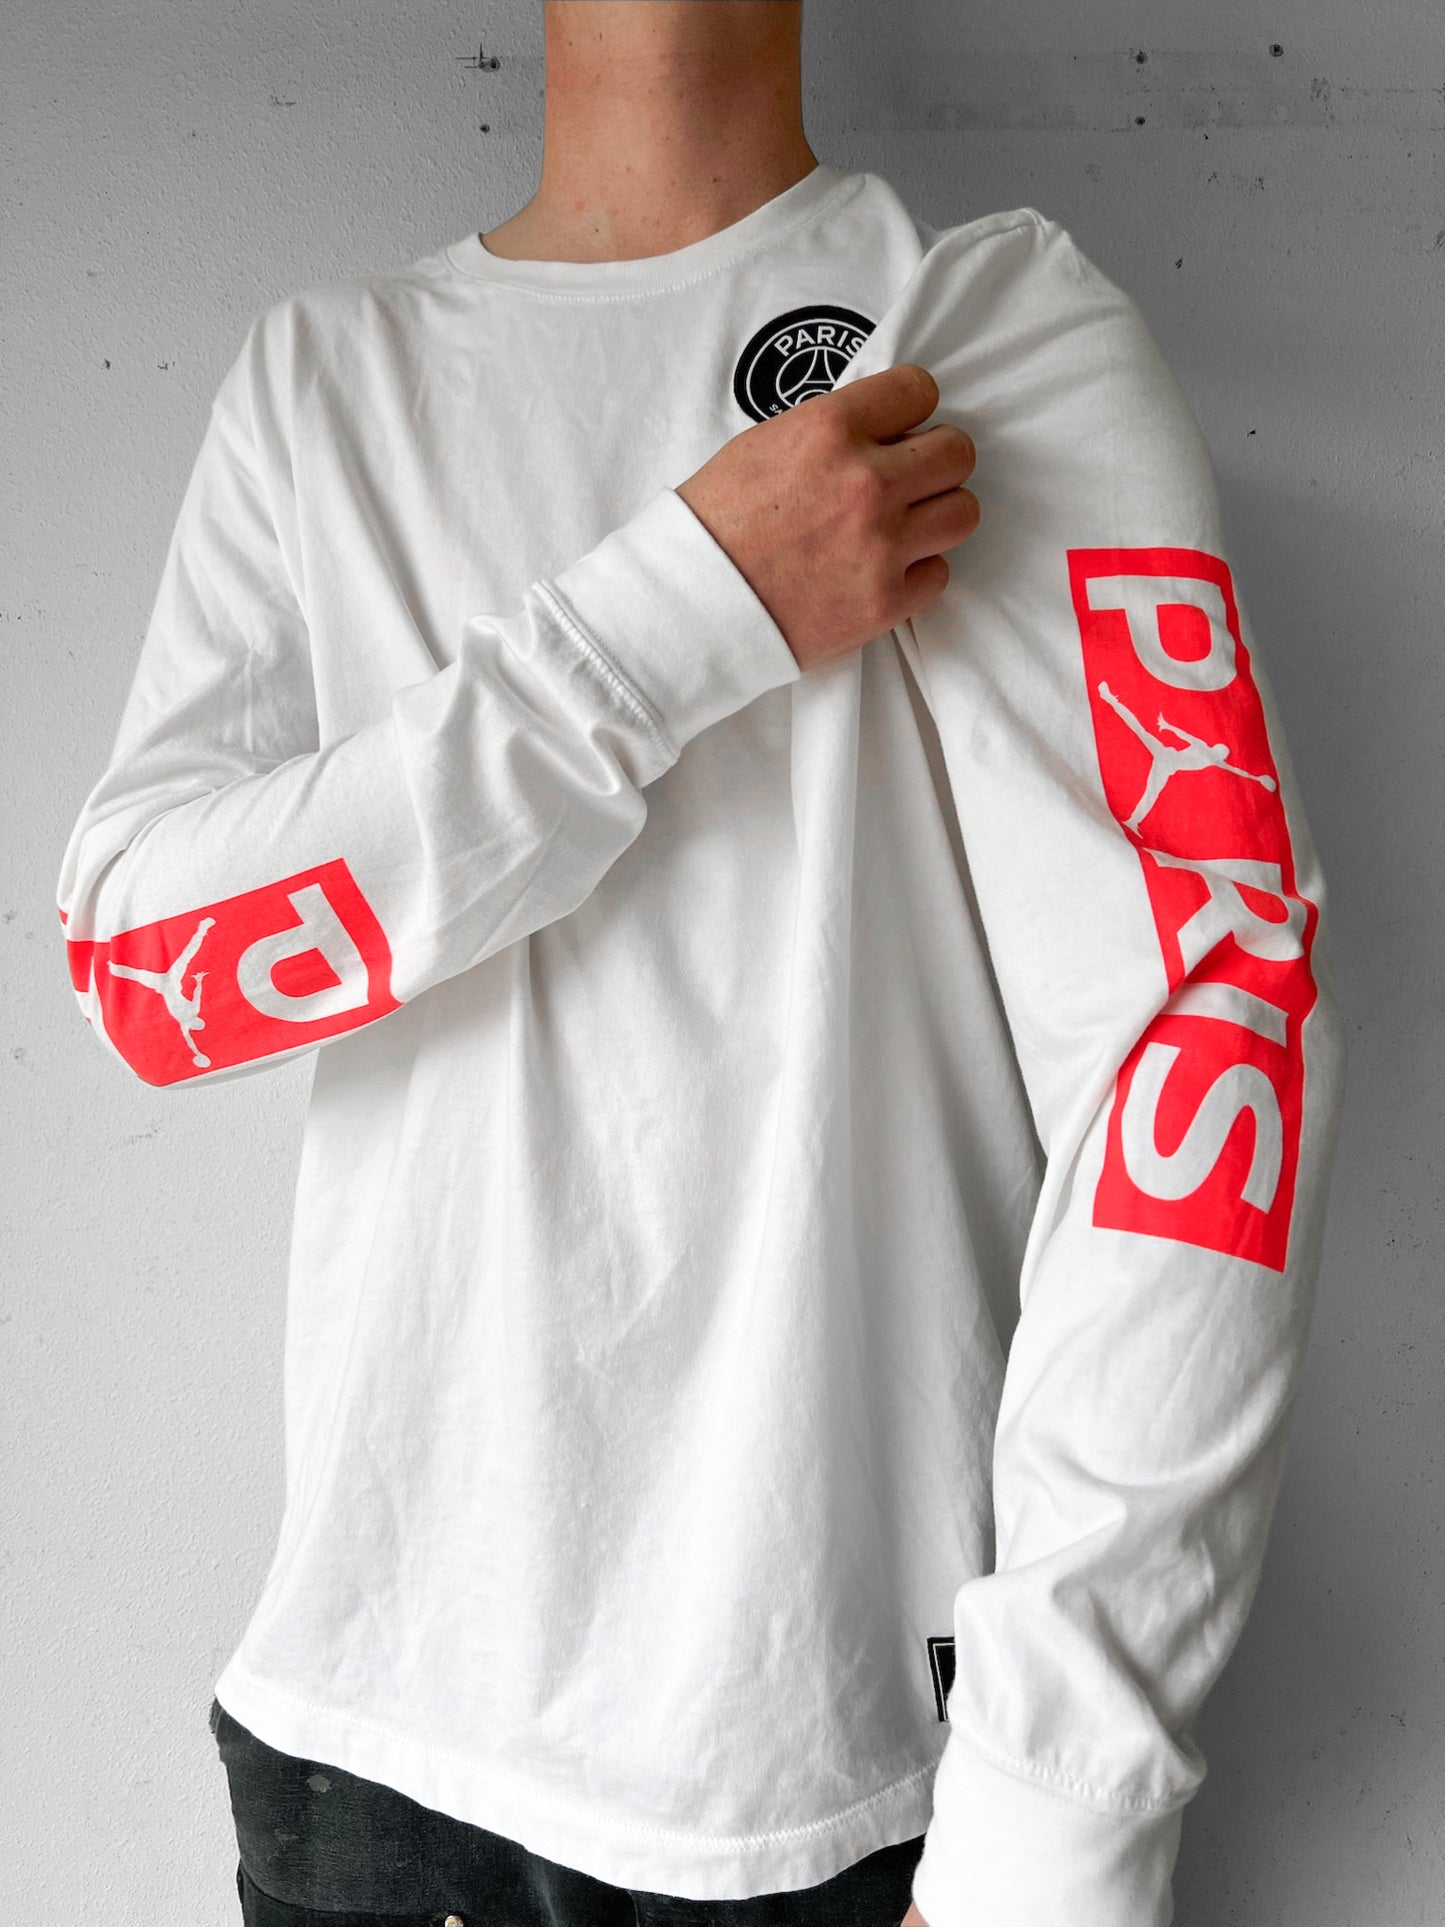 Nike Air Jordan PSG Long-Sleeve Shirt - XL